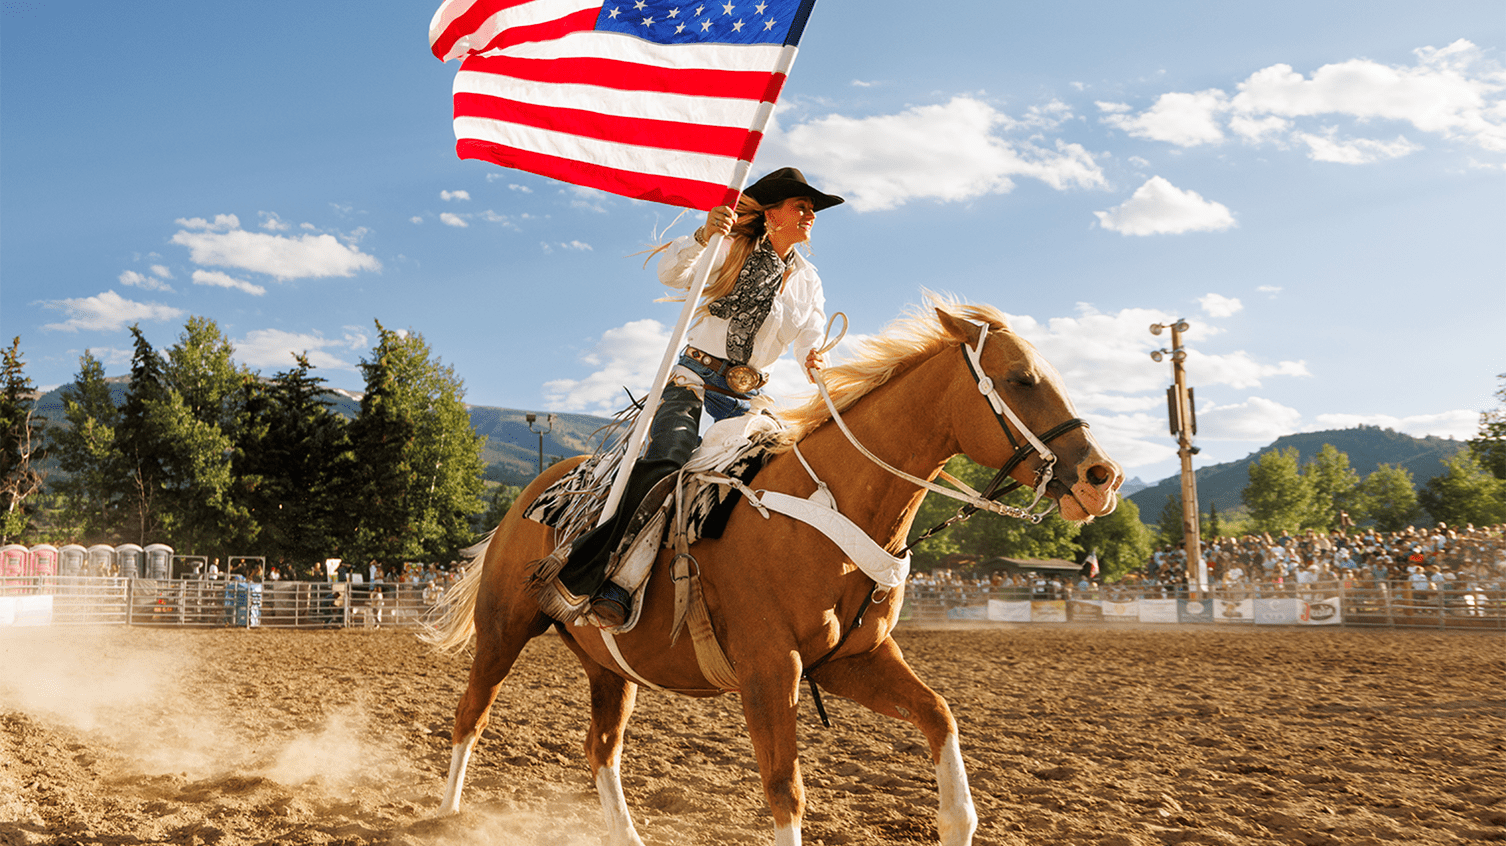 Rider circles arena on tan horse, waving American flag